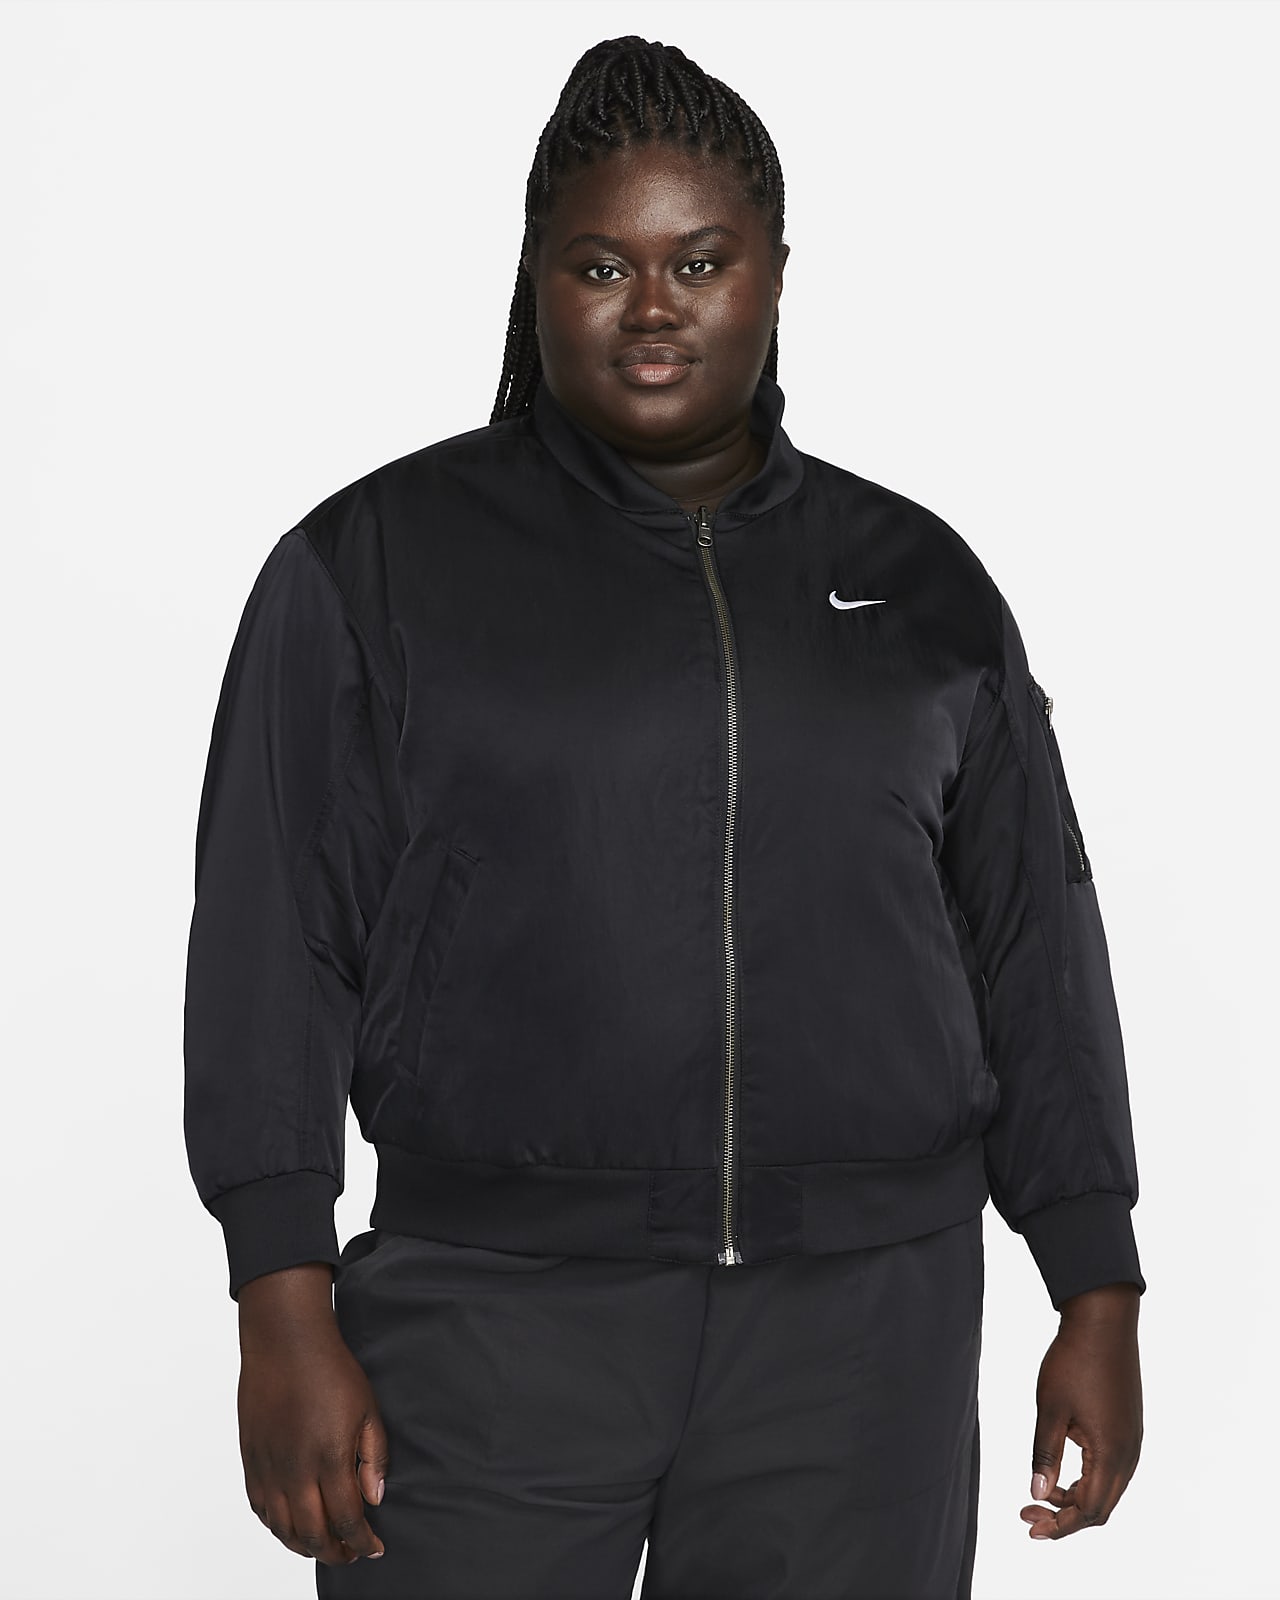 Nike Sportswear Women's Reversible Varsity Bomber Jacket (Plus